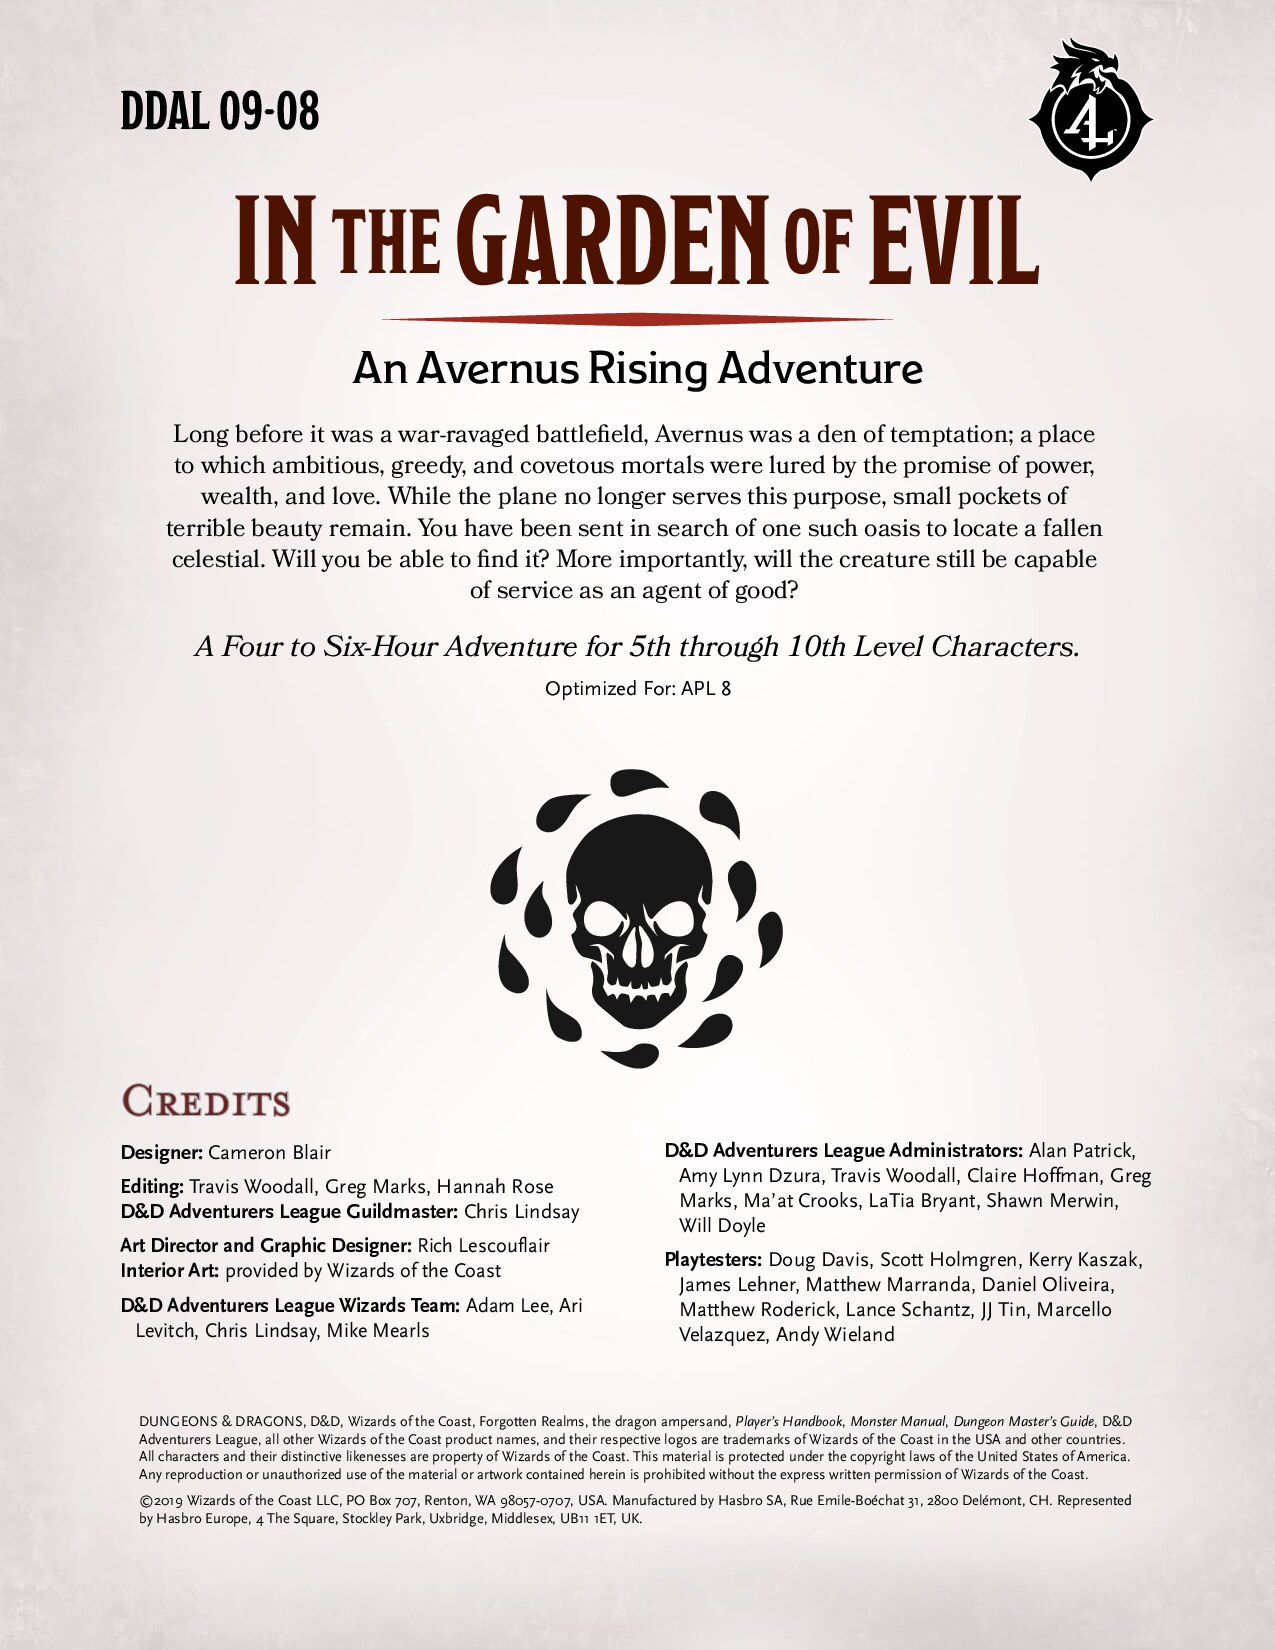 DDAL09-08 - In the Garden of Evil